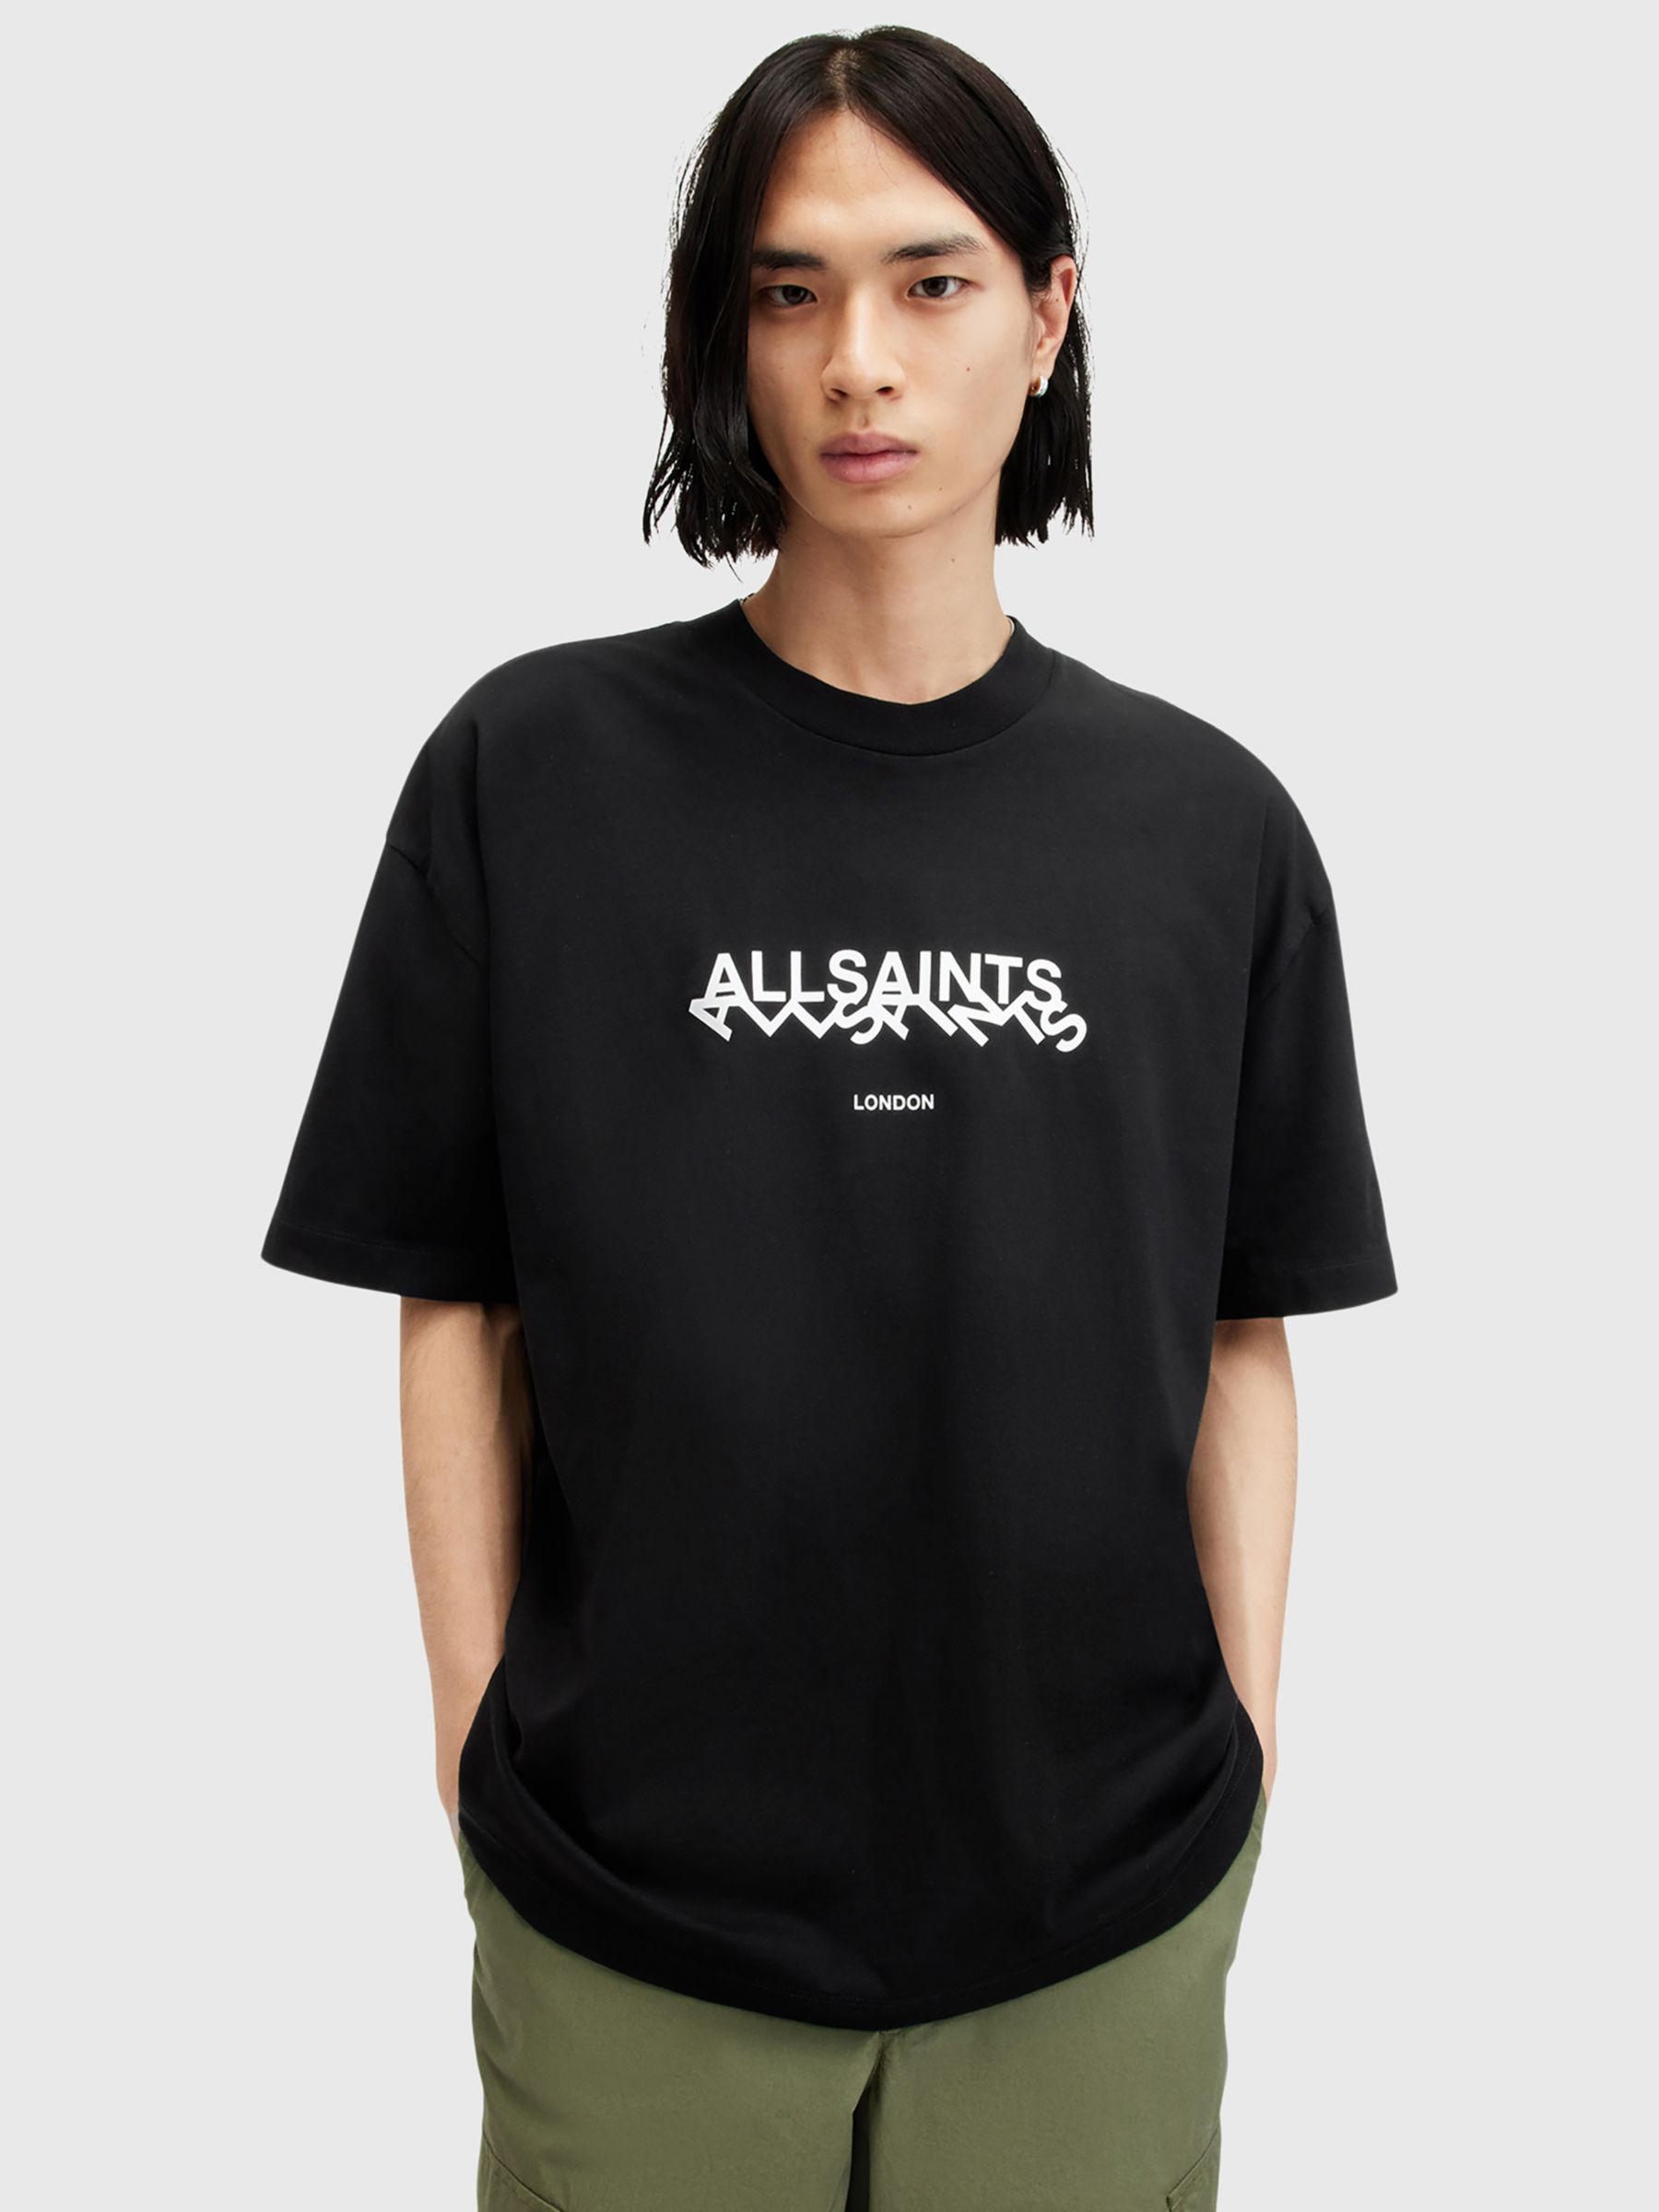 AllSaints Slanted Short Sleeve Crew T-Shirt, Black, XXL